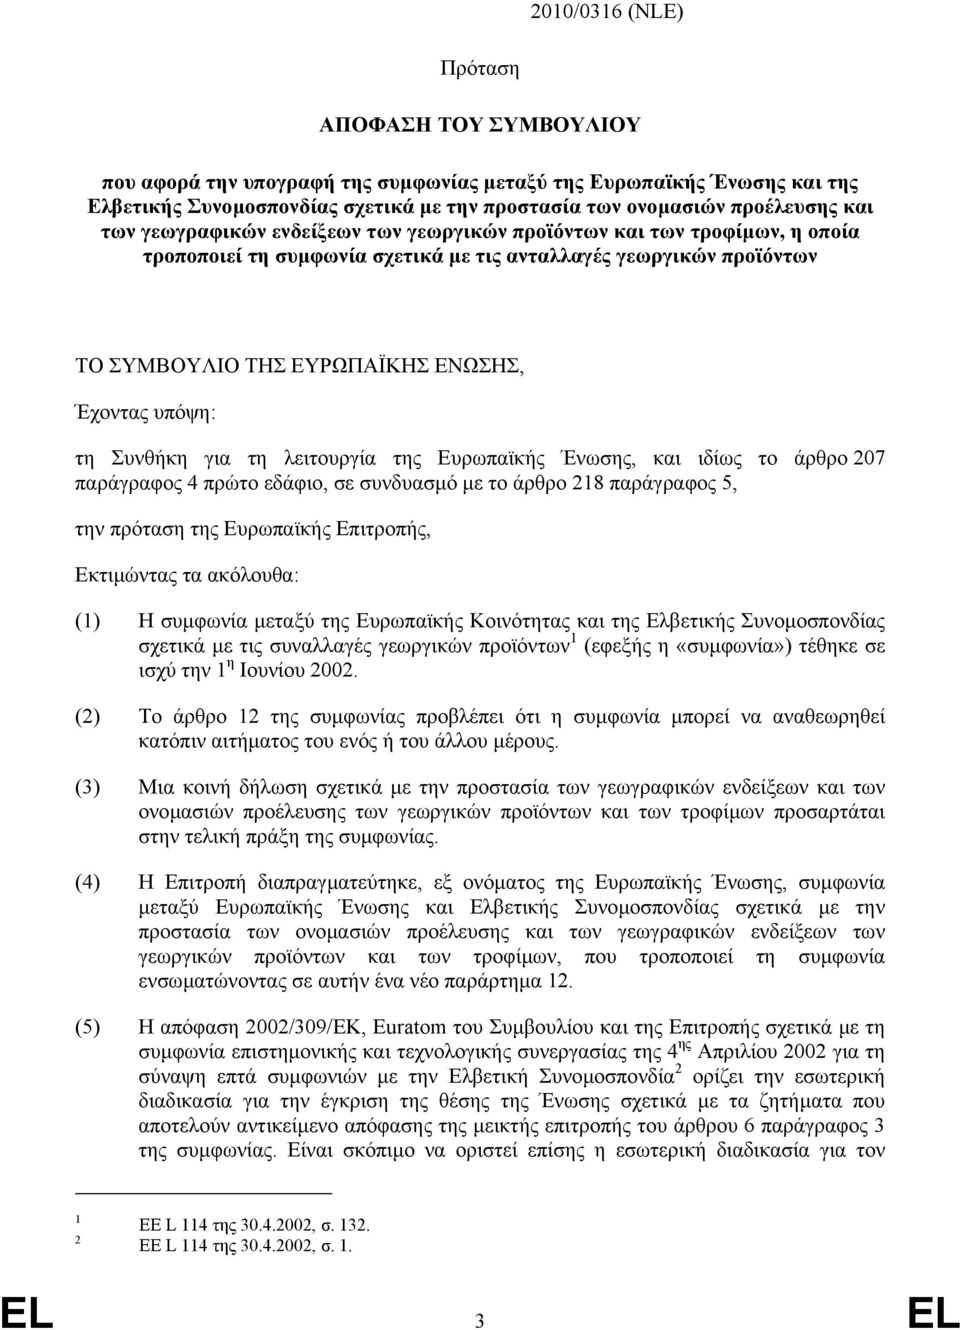 Συνθήκη για τη λειτουργία της Ευρωπαϊκής Ένωσης, και ιδίως το άρθρο 207 παράγραφος 4 πρώτο εδάφιο, σε συνδυασµό µε το άρθρο 218 παράγραφος 5, την πρόταση της Ευρωπαϊκής Επιτροπής, Εκτιµώντας τα